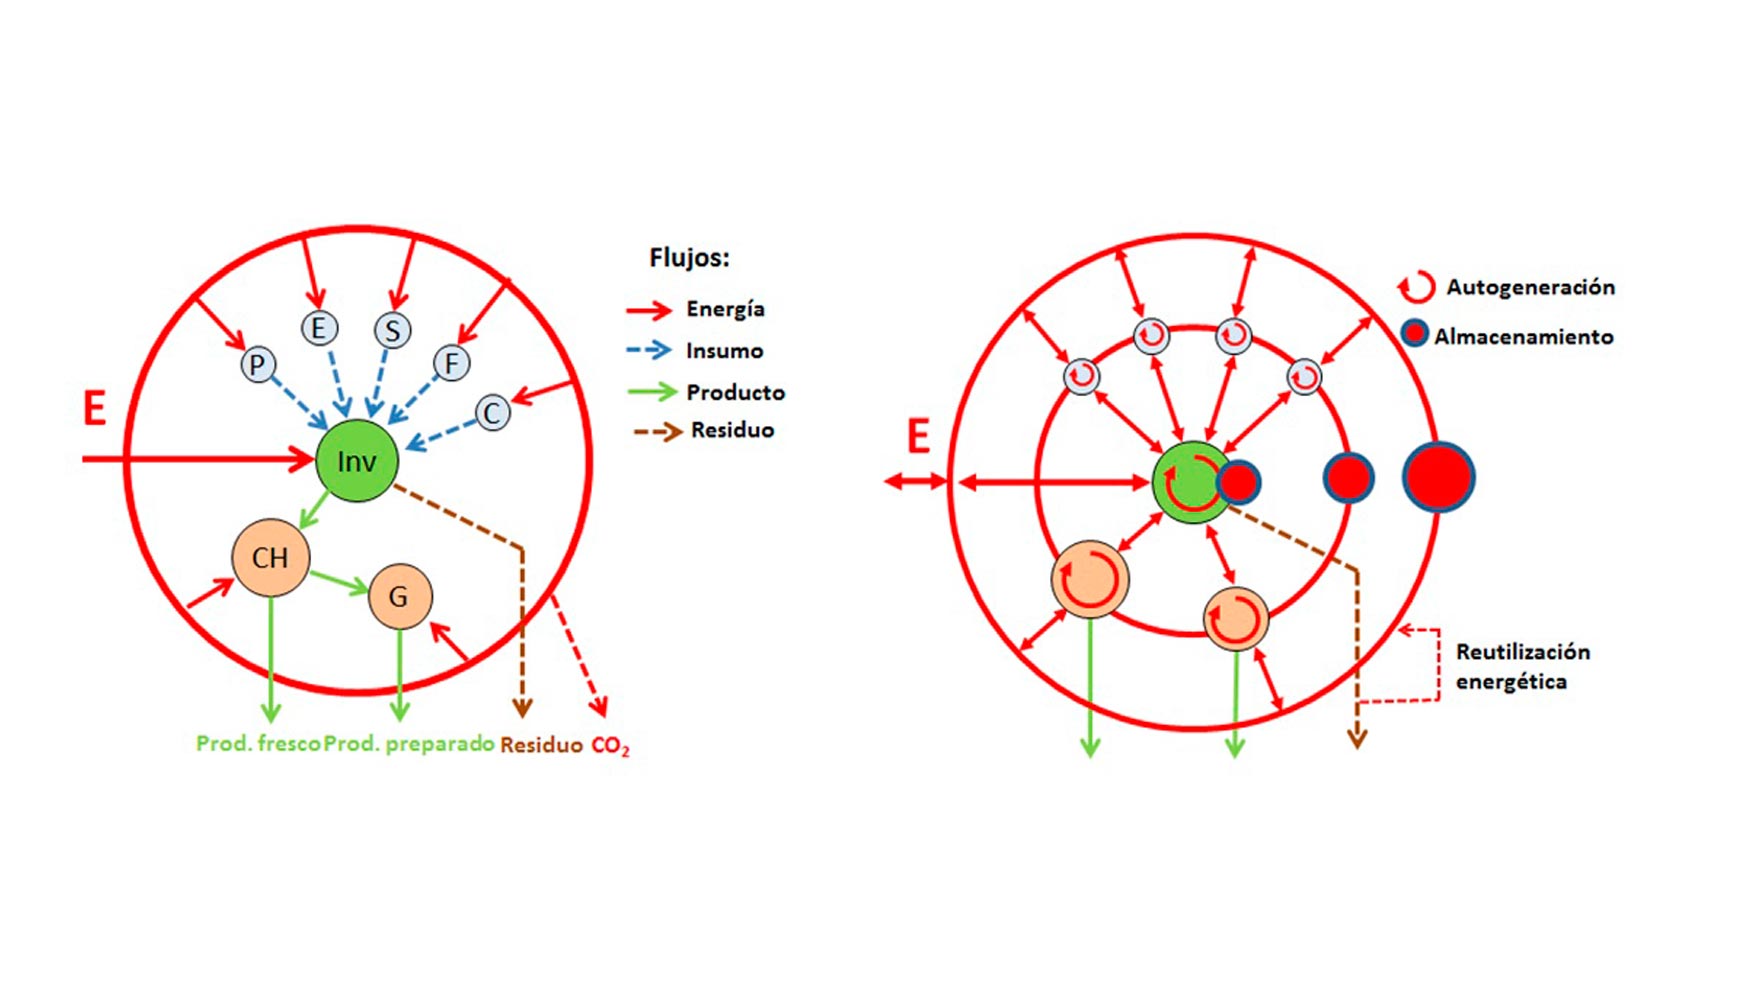 Figura 1: Esquema de red energtica y flujos actuales (izquierda) y esquema de red renovable propuesta para la agroindustria almeriense (derecha)...